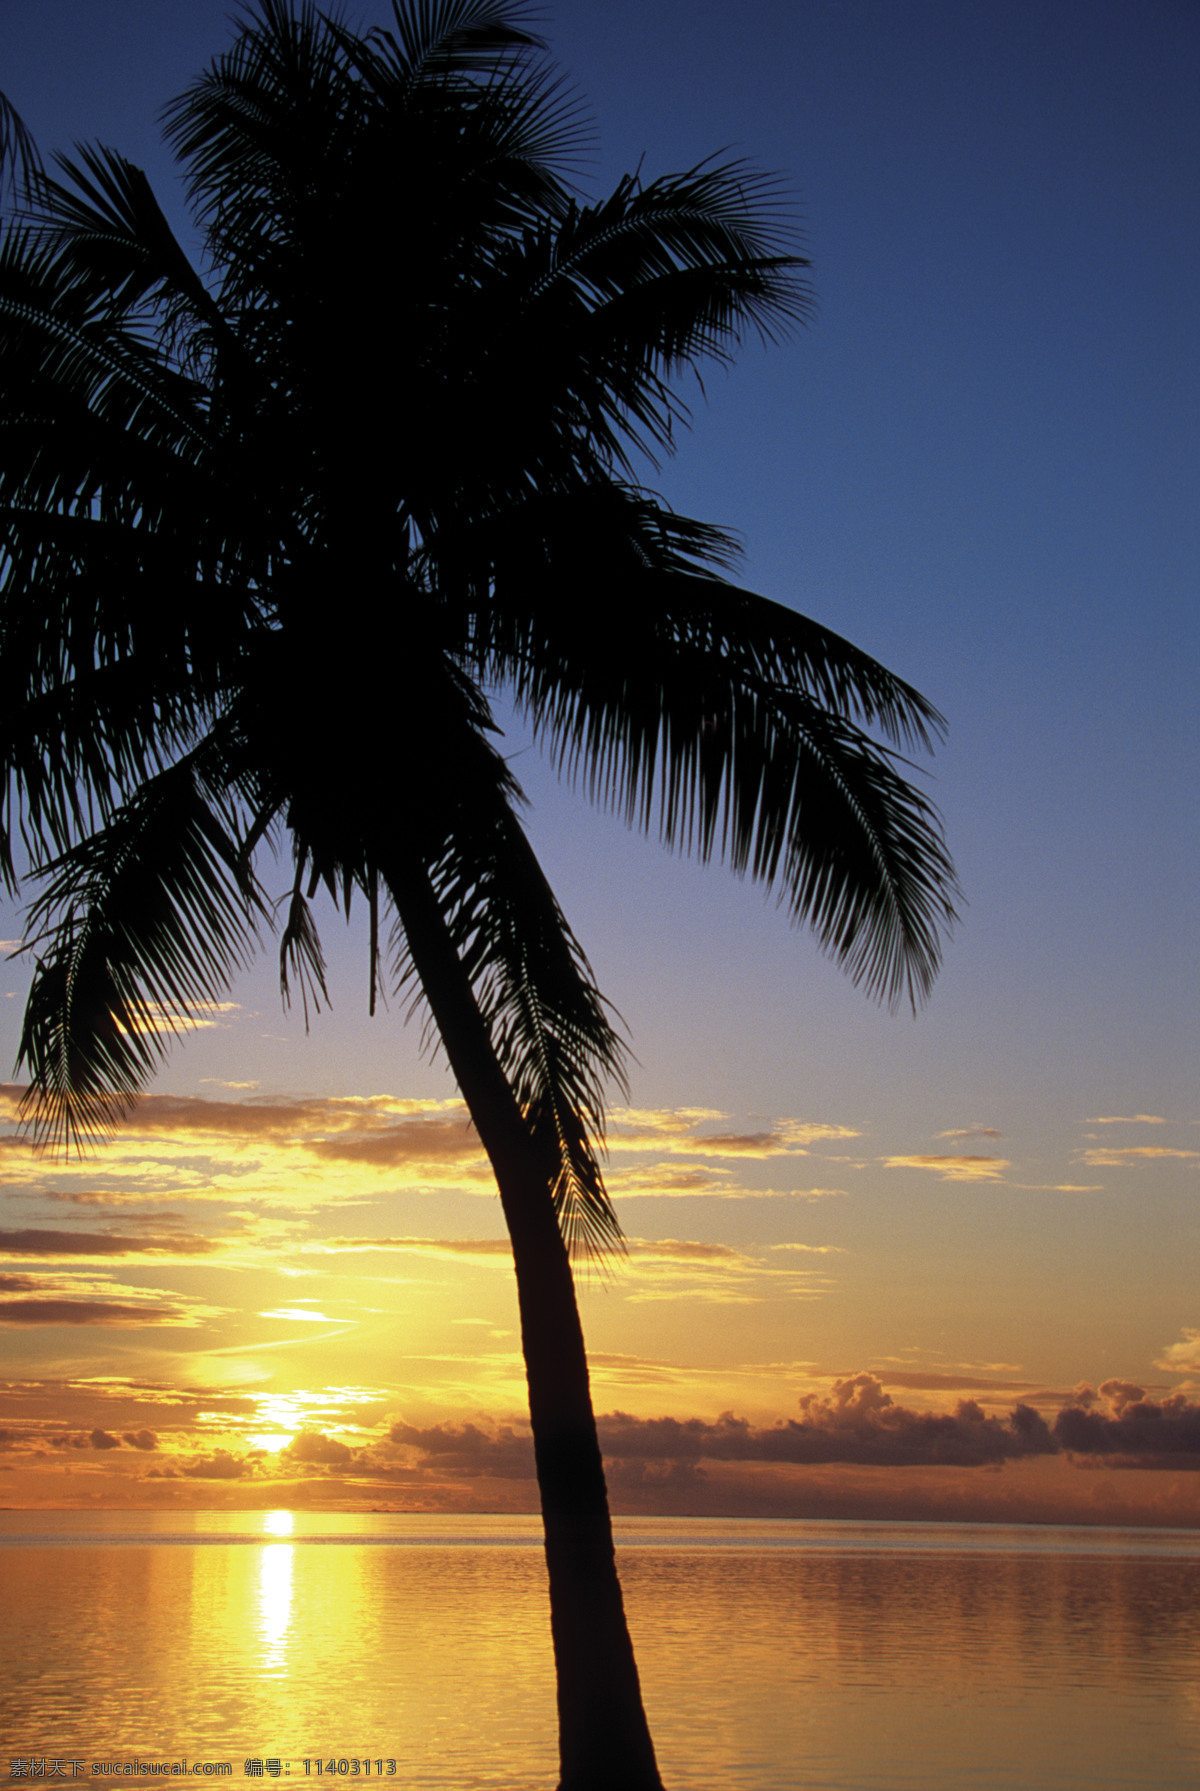 黄昏 时 海面 风光 美丽海滩 海边风景 太平洋 海岸风光 夕阳 沙滩 海滩 大海 海洋 海平面 椰子 椰树 旅游景点 海景 景色 美景 风景 摄影图 高清图片 海洋海边 自然景观 黑色